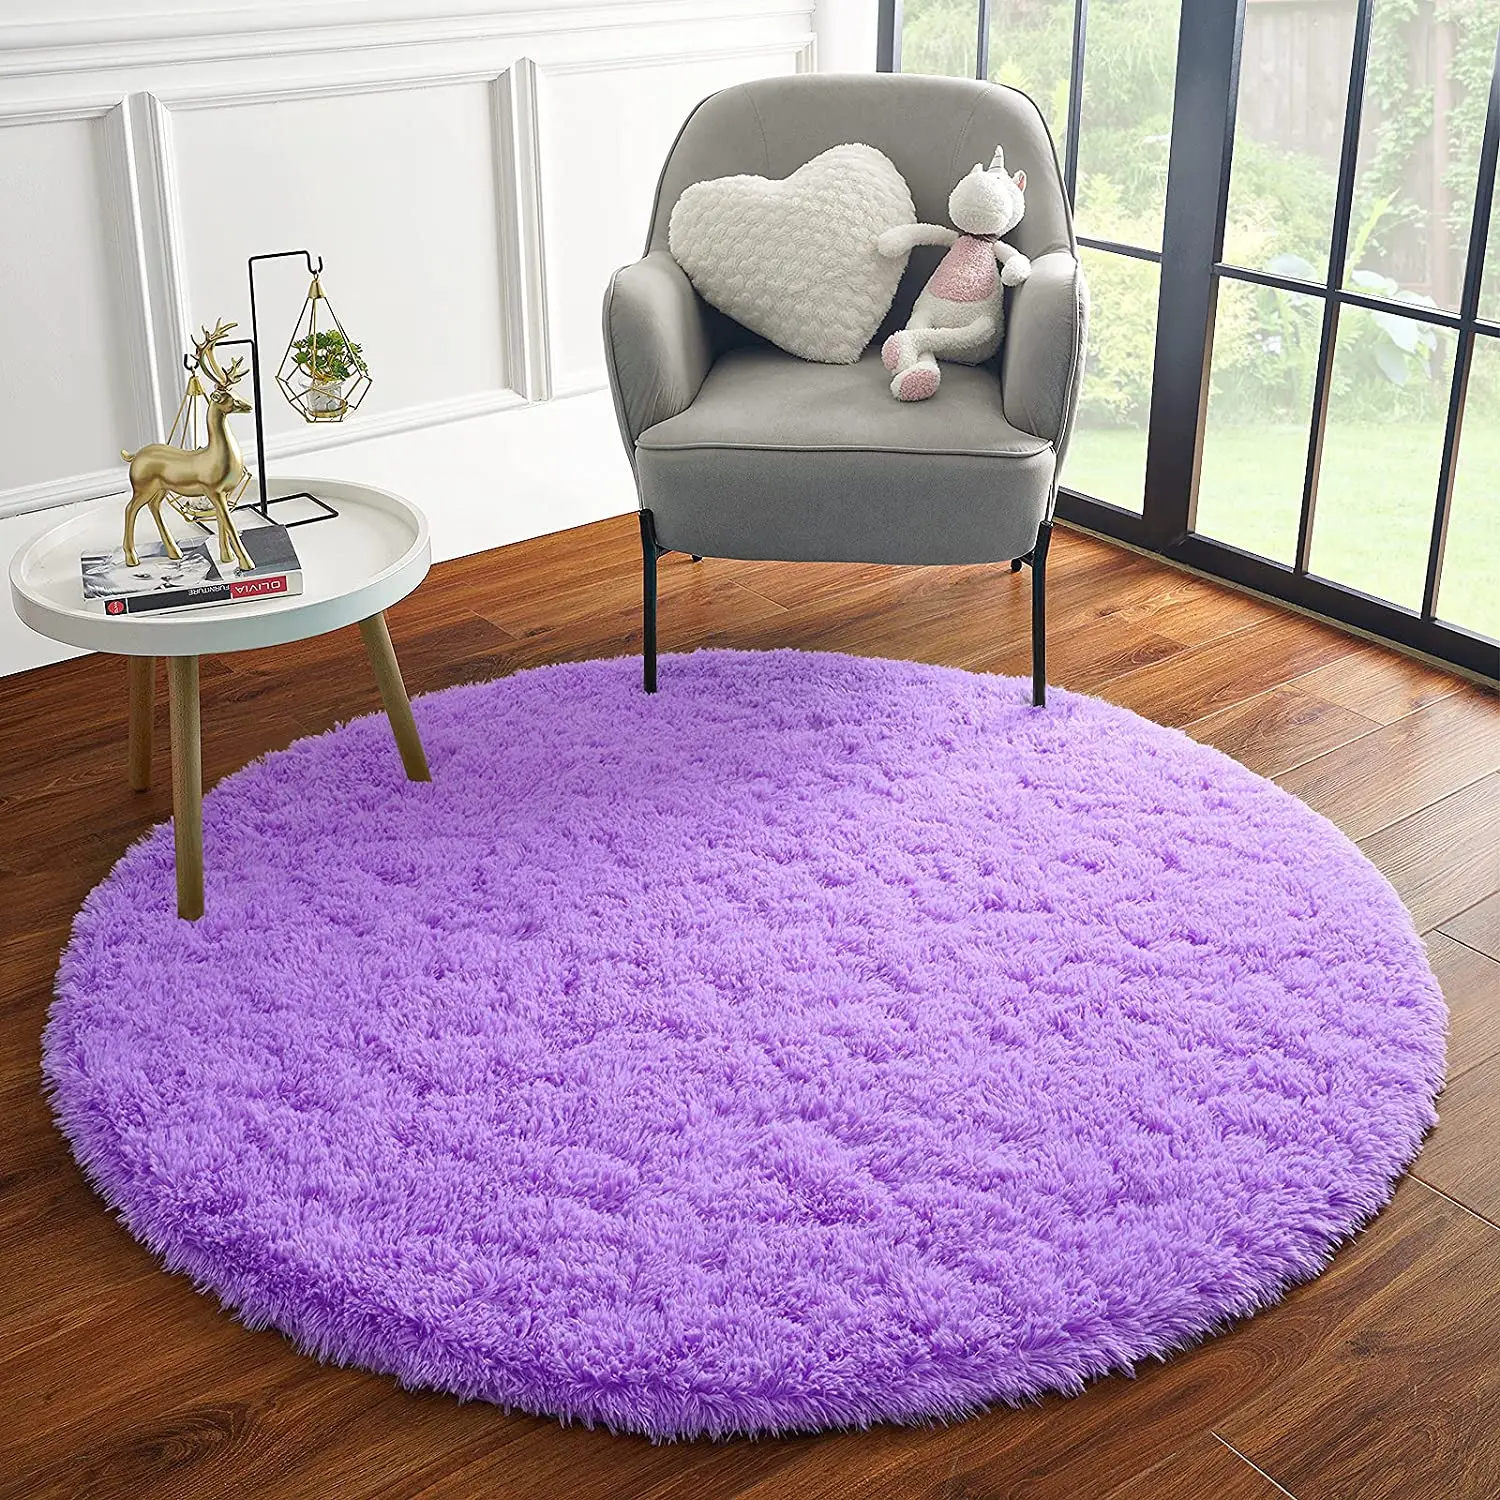 Round Area Rug Super Soft Carpet Pad Mat for Living Room Bedroom Kids Room 60cm 